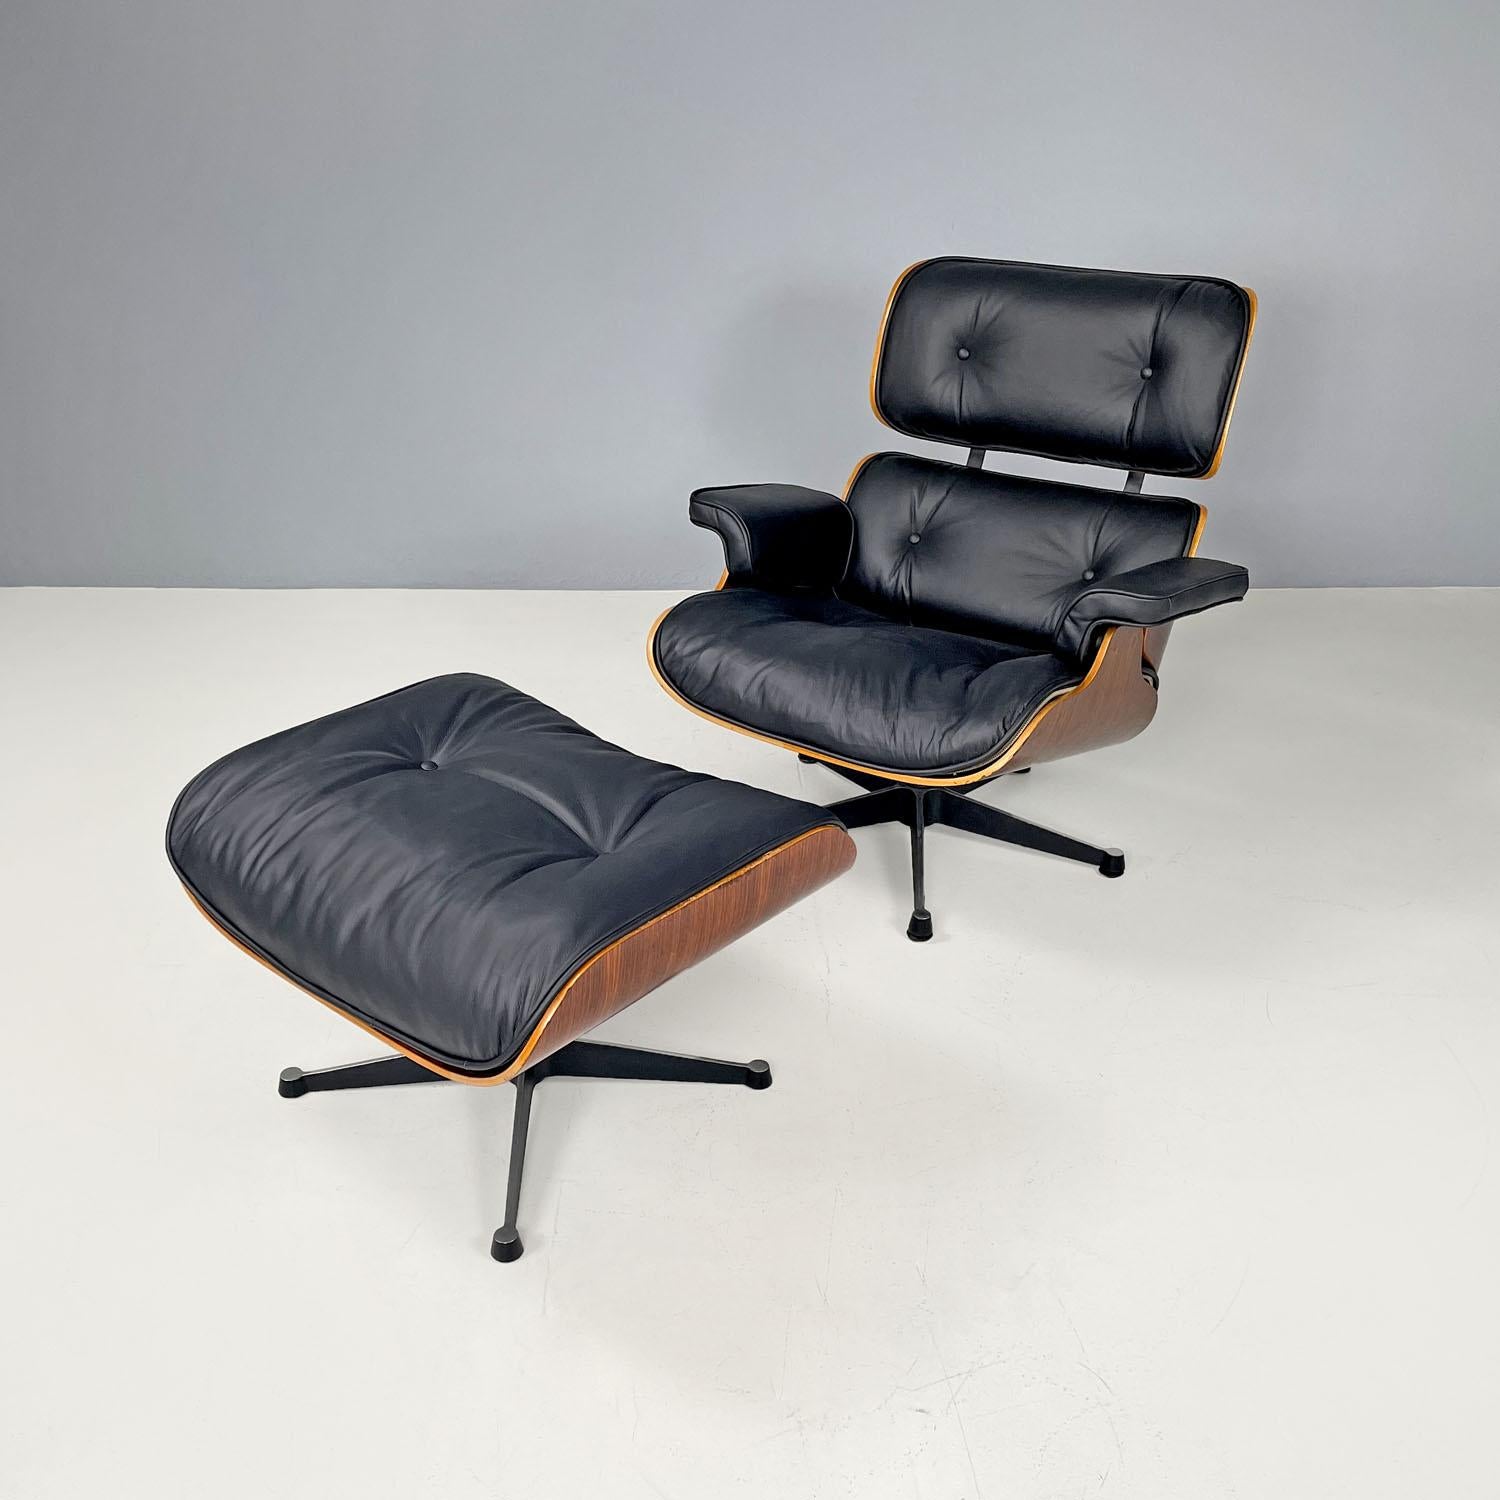 Moderner amerikanischer Loungesessel aus schwarzem Leder 670 671 von Eames für Miller, 1970er Jahre
Set aus Sessel und Ottomane Mod. 670 und 671 mit Holzkorpus. Der Sessel besteht aus einem quadratischen Sitz und einer Rückenlehne mit abgerundeten